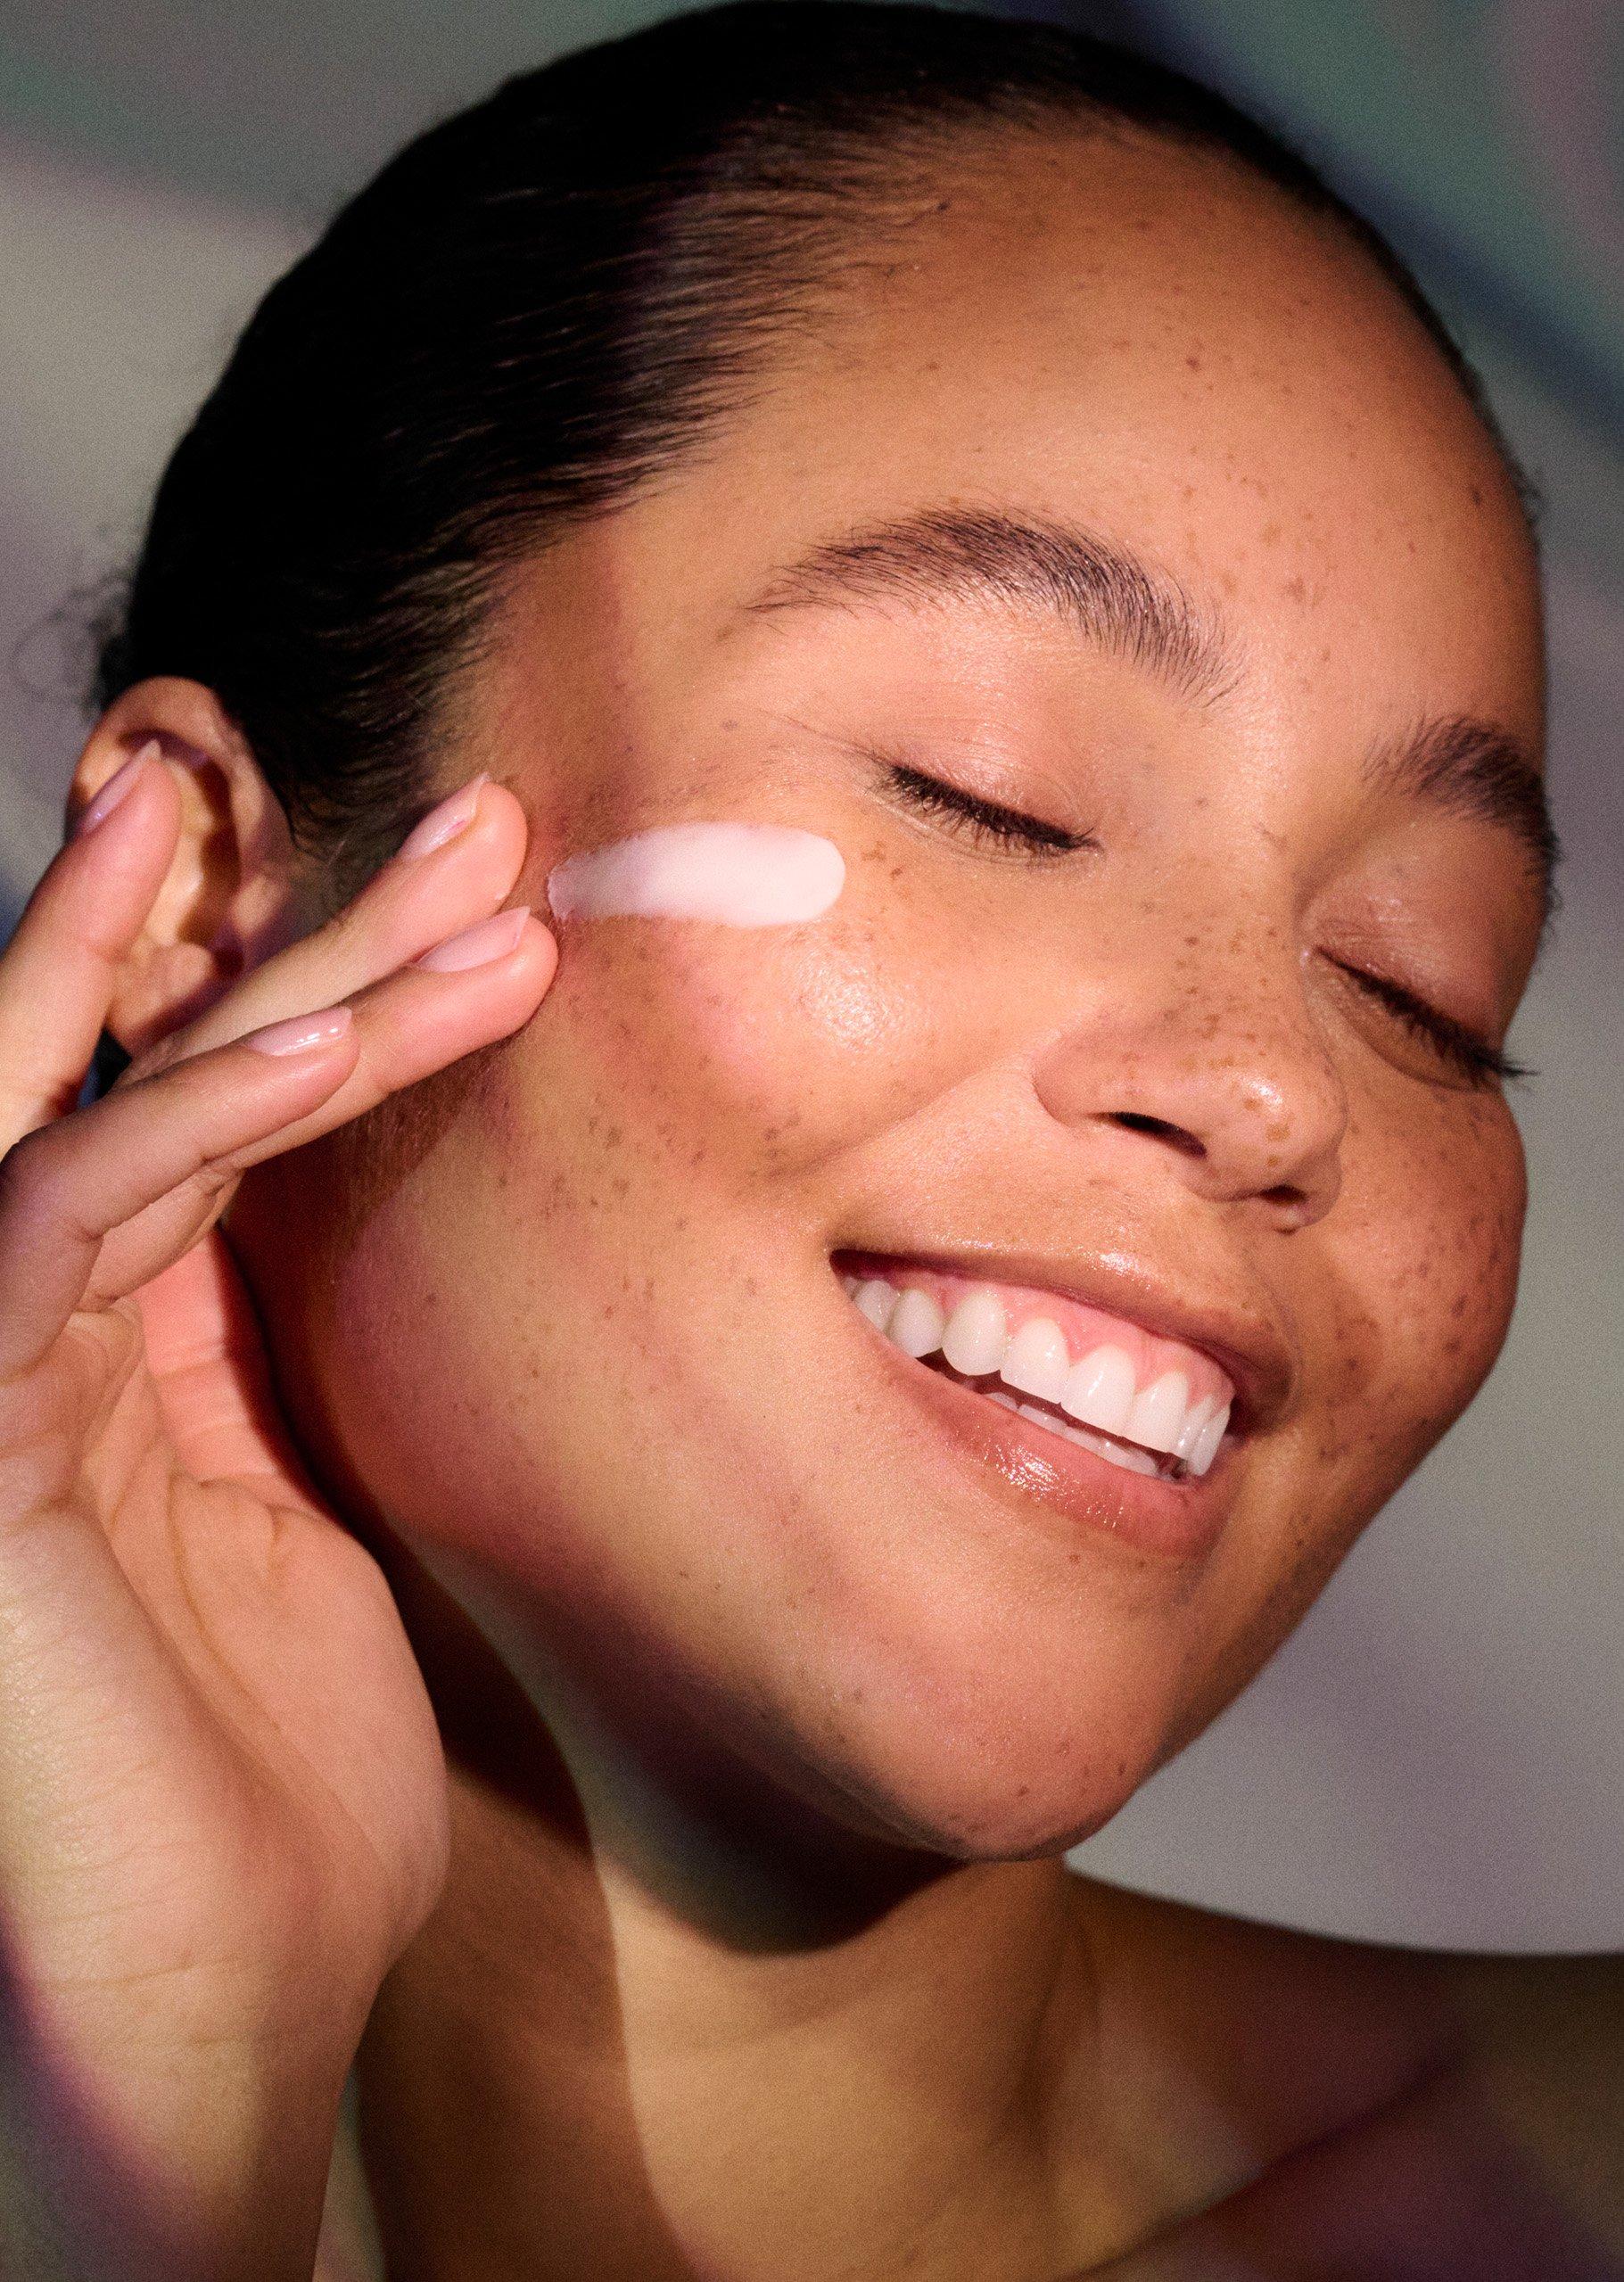 Hautbild verbessern – Tipps und Tricks für schöne Haut